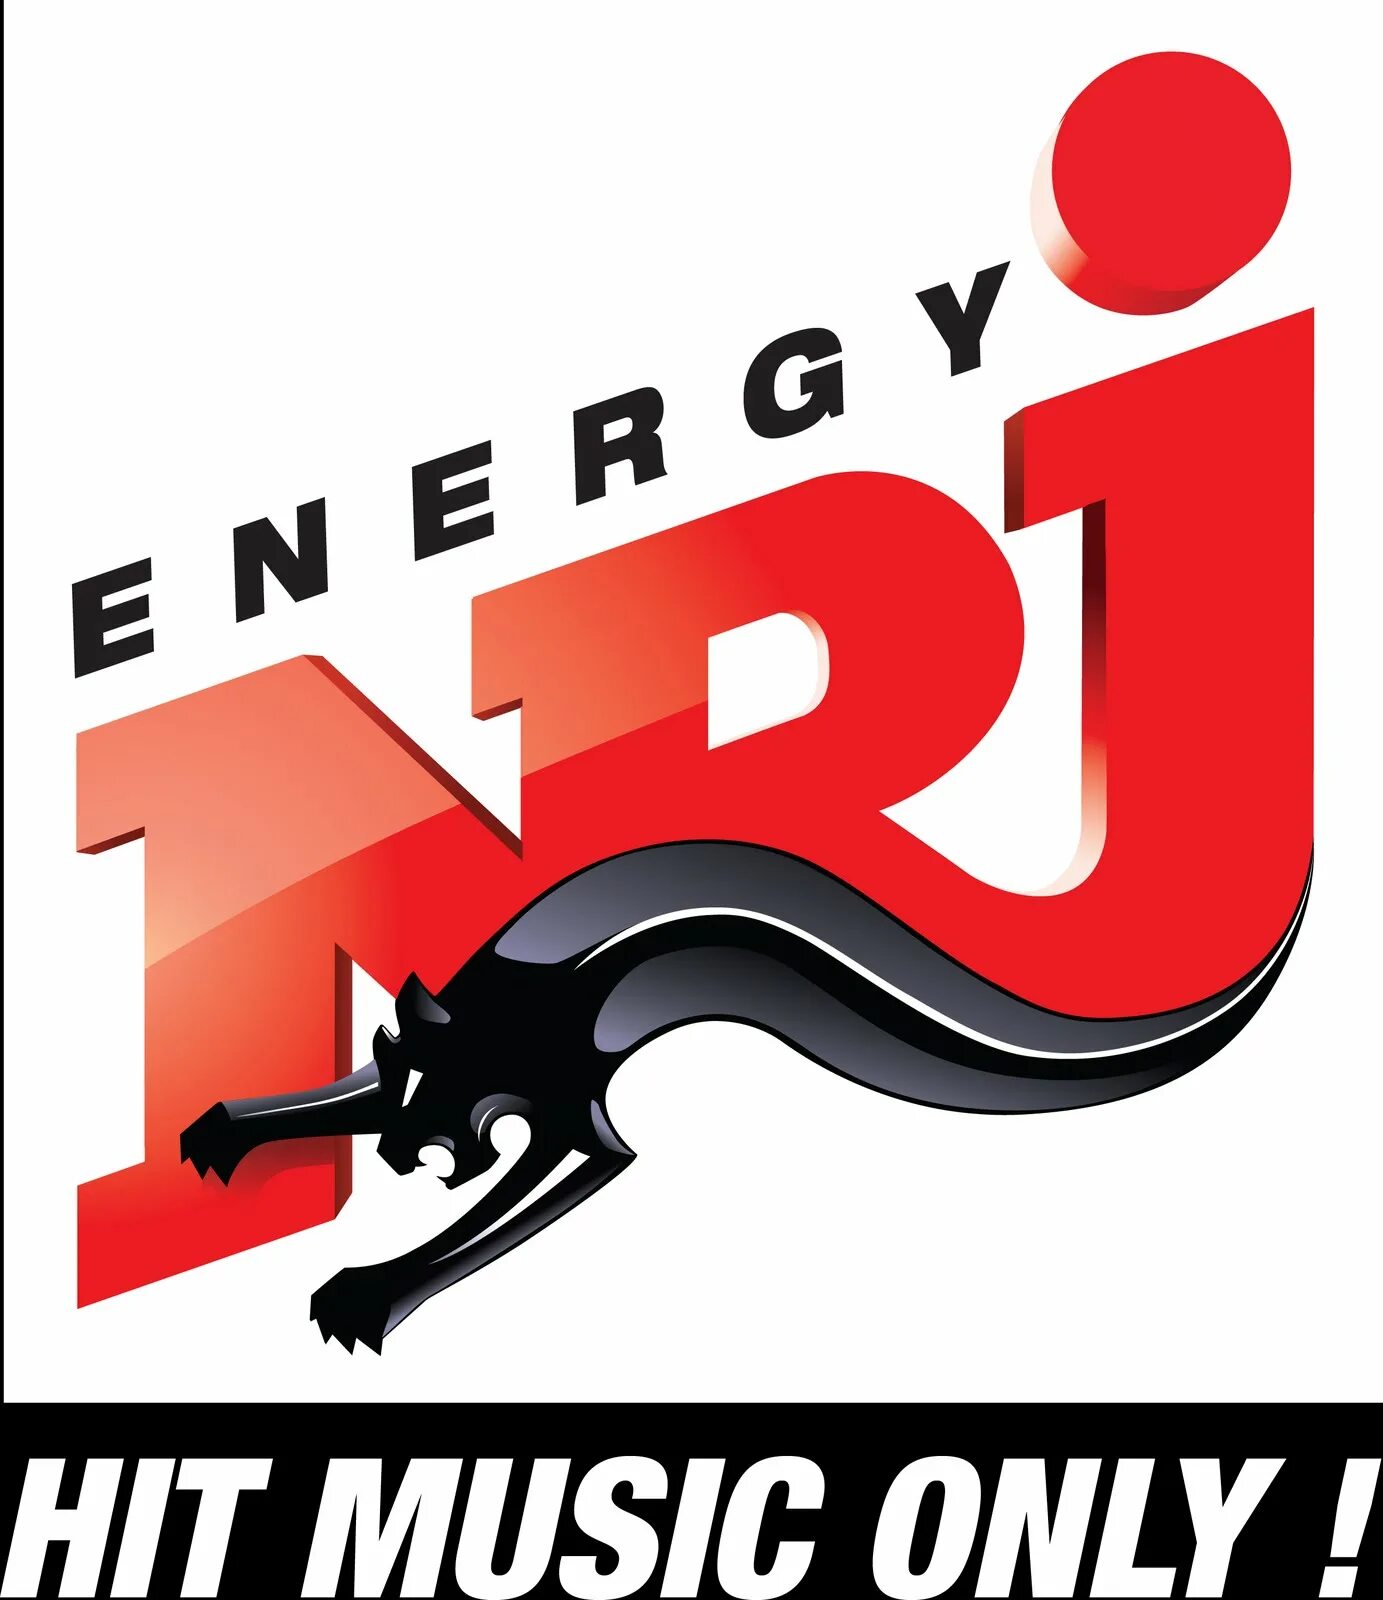 Nrg радио. Радио Energy. Лого радиостанции Энерджи. Энерджи ФМ. Energy fm логотип радиостанции.